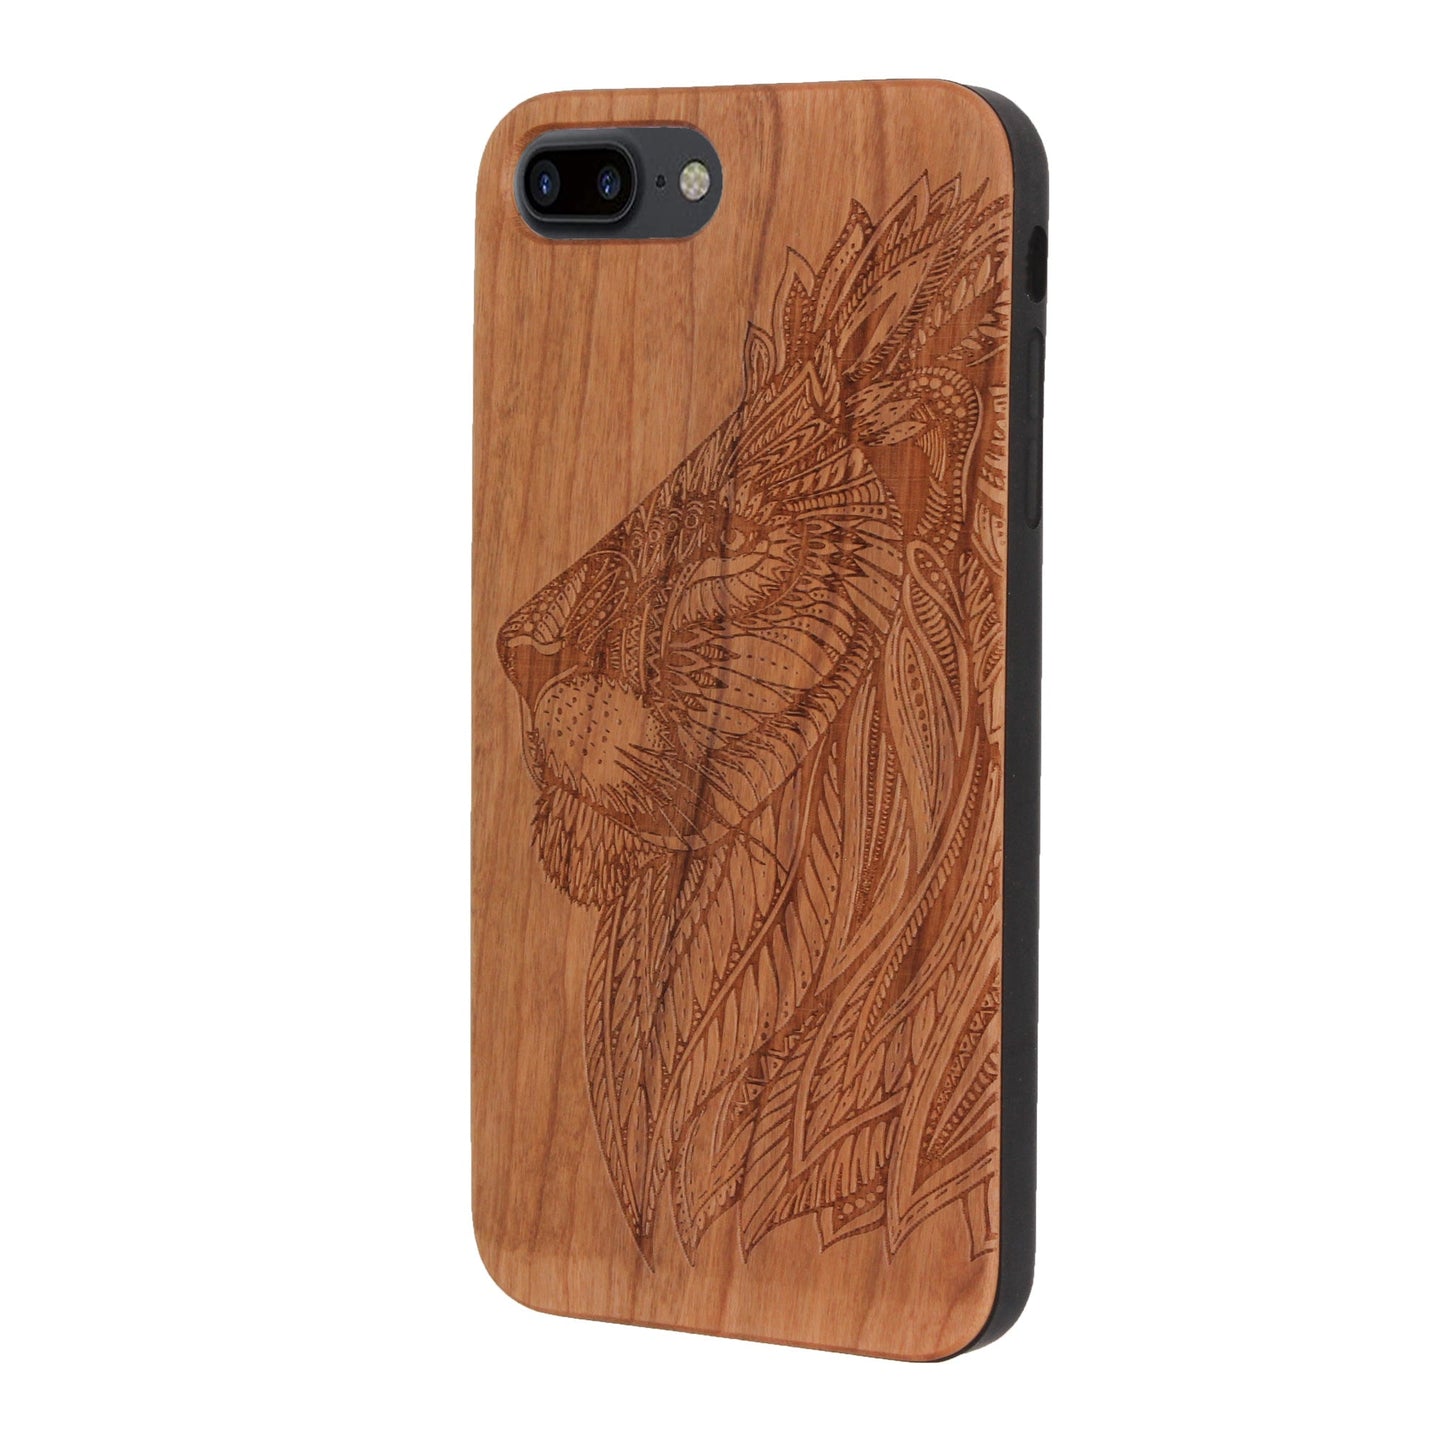 Coque Eden Lion en bois de cerisier pour iPhone 6/6S/7/8 Plus 